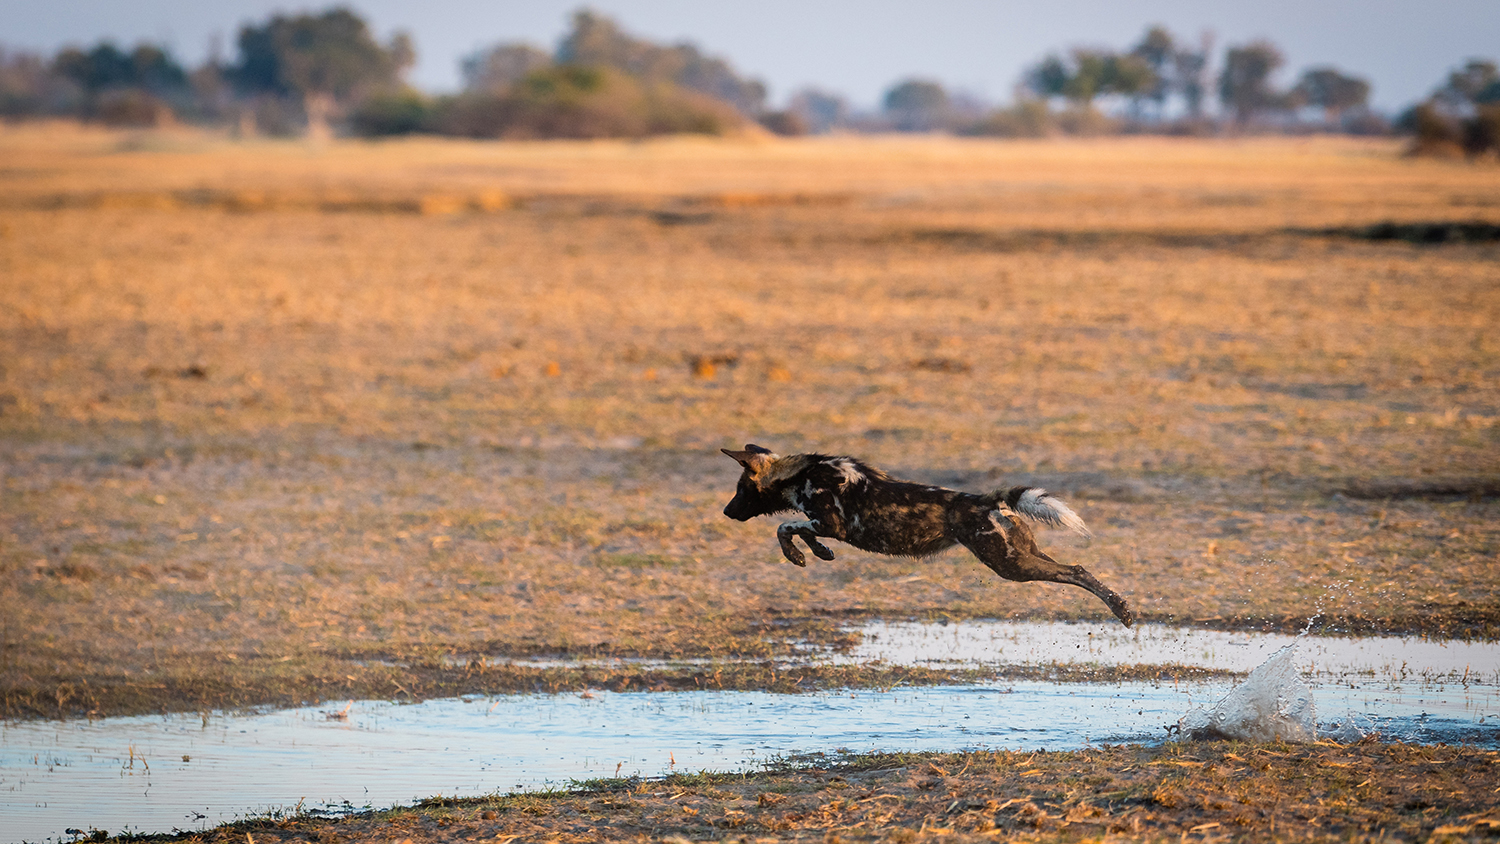 Ein Afrikanischer Wildhund überquert einen kleinen Kanal im Okavango-Delta in Botswana. Sümpfe, Flüsse und Seen dagegen stellen meist kaum überwindbare Hindernisse dar. (Bild: Dominik Behr)